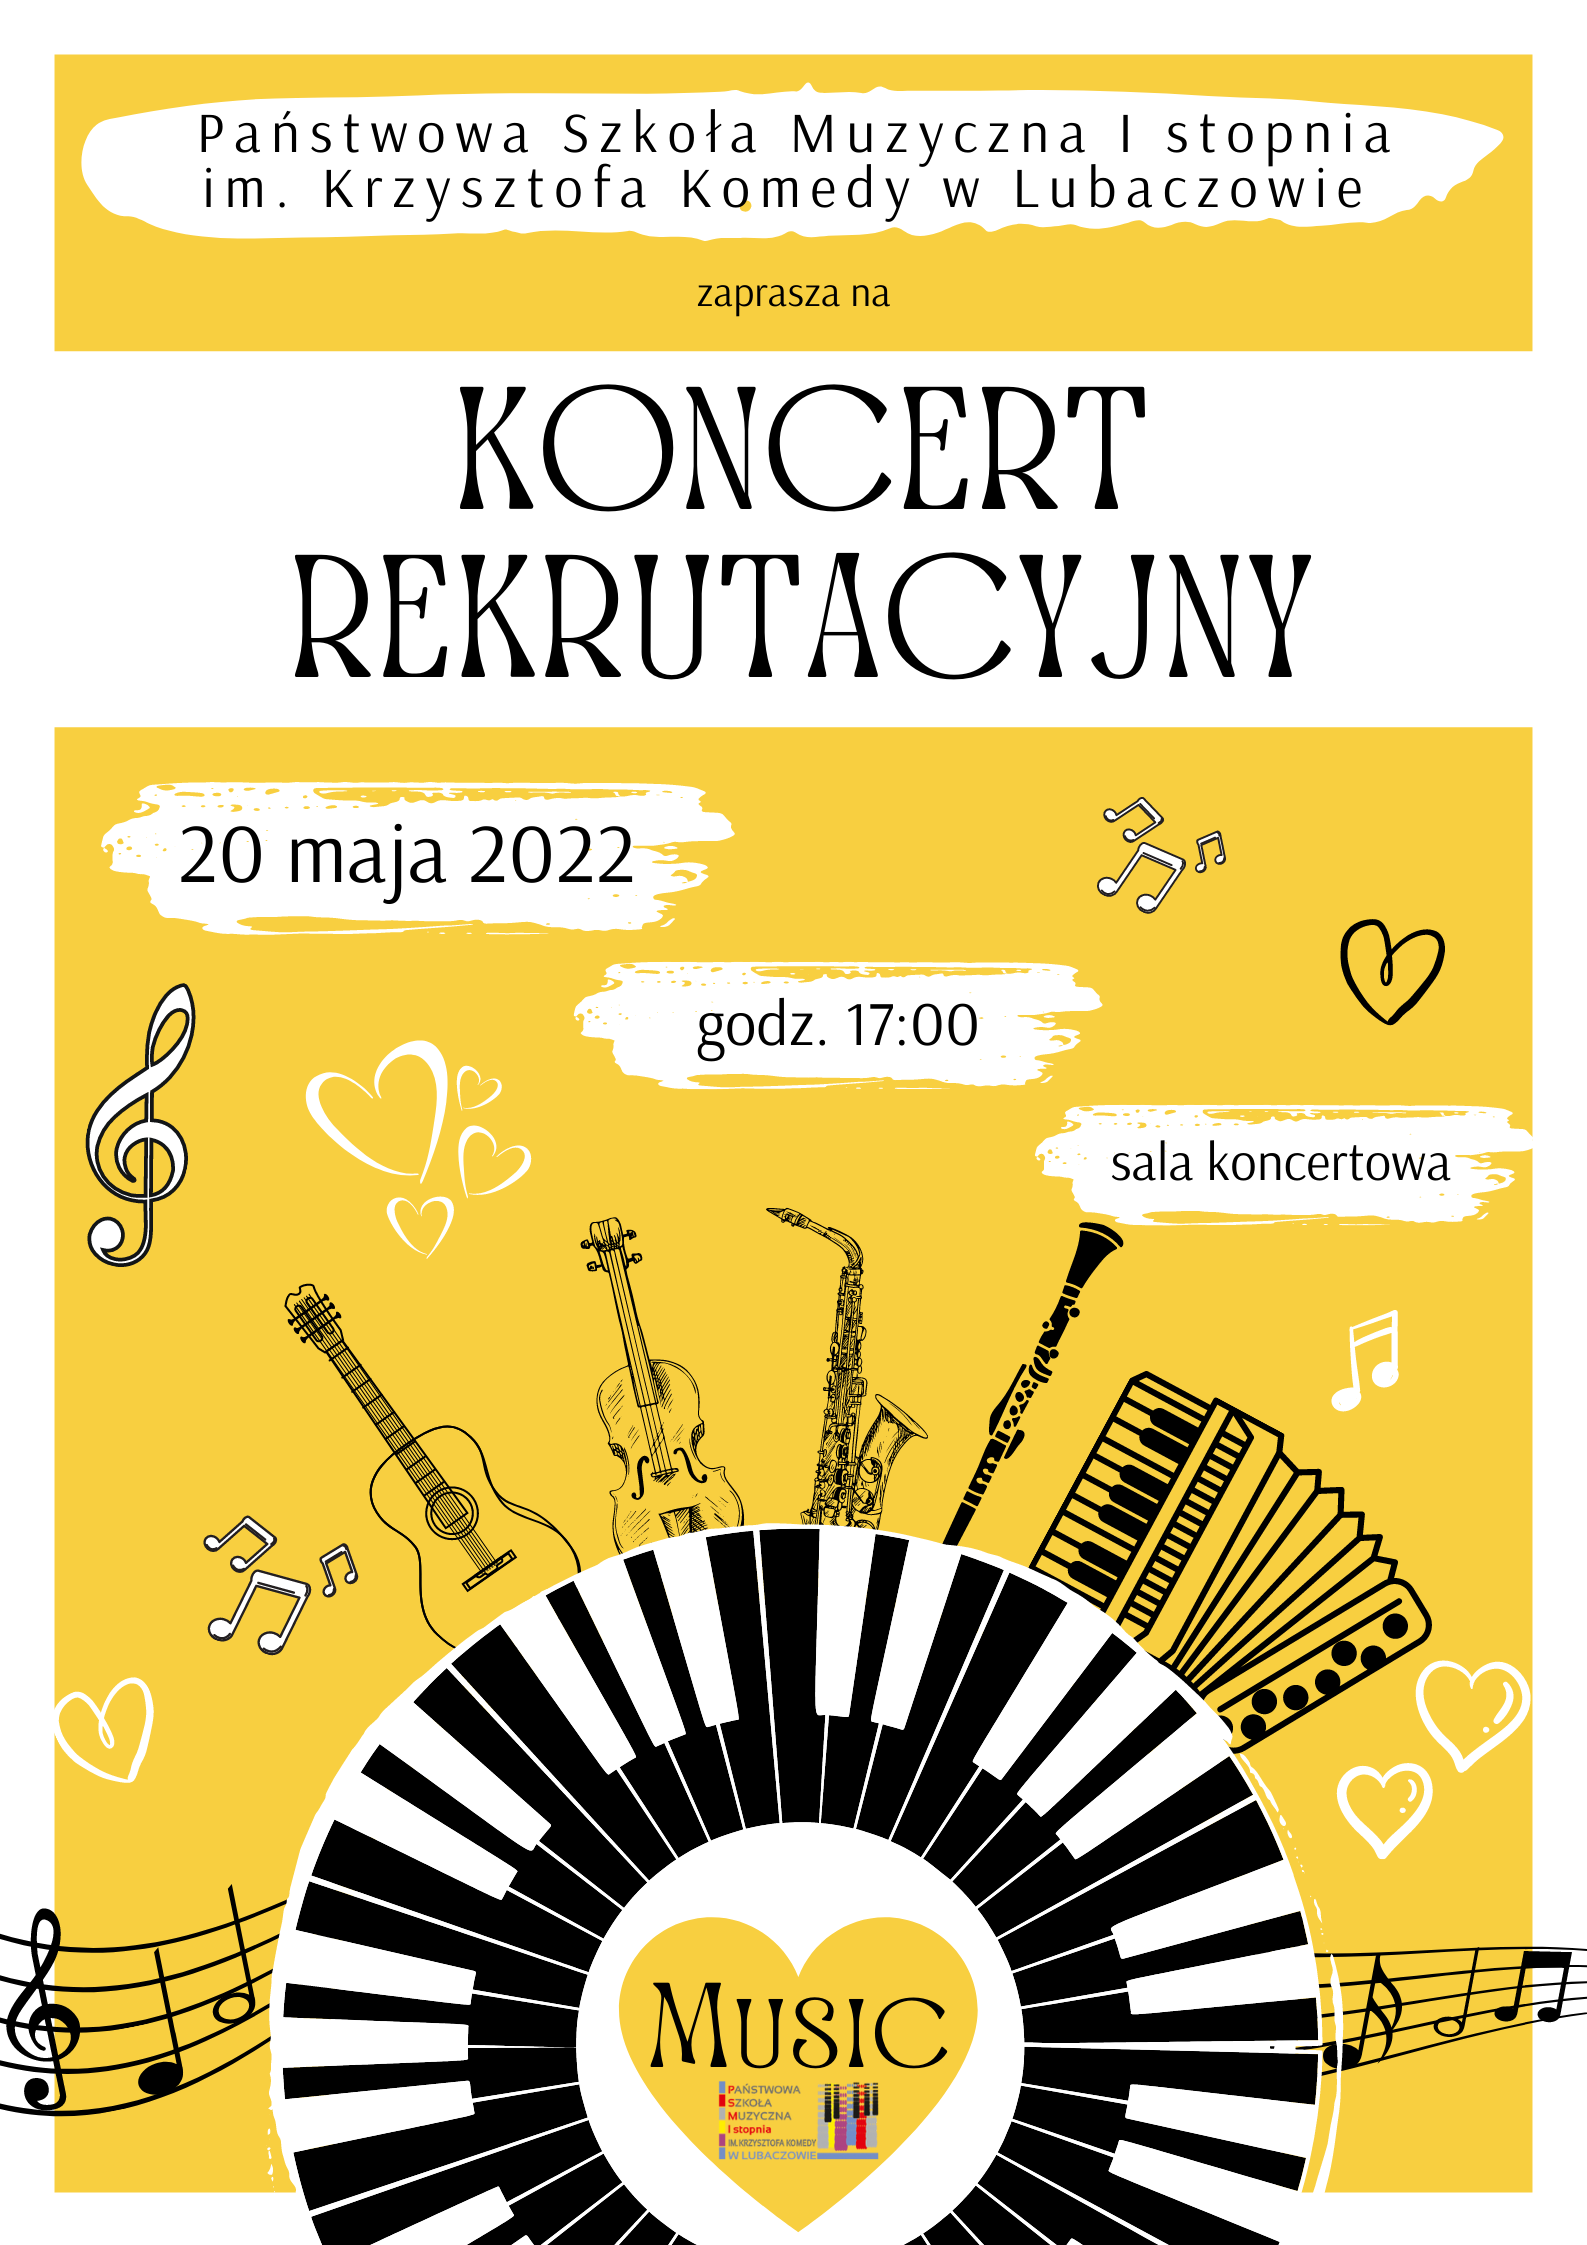 Plakatu koncertu rekrutacyjnego na żółtym tle z ikonografiami instrumentów muzycznych - 20 maja 2022 r. - g0dz.17.00 - Sala Koncertowa